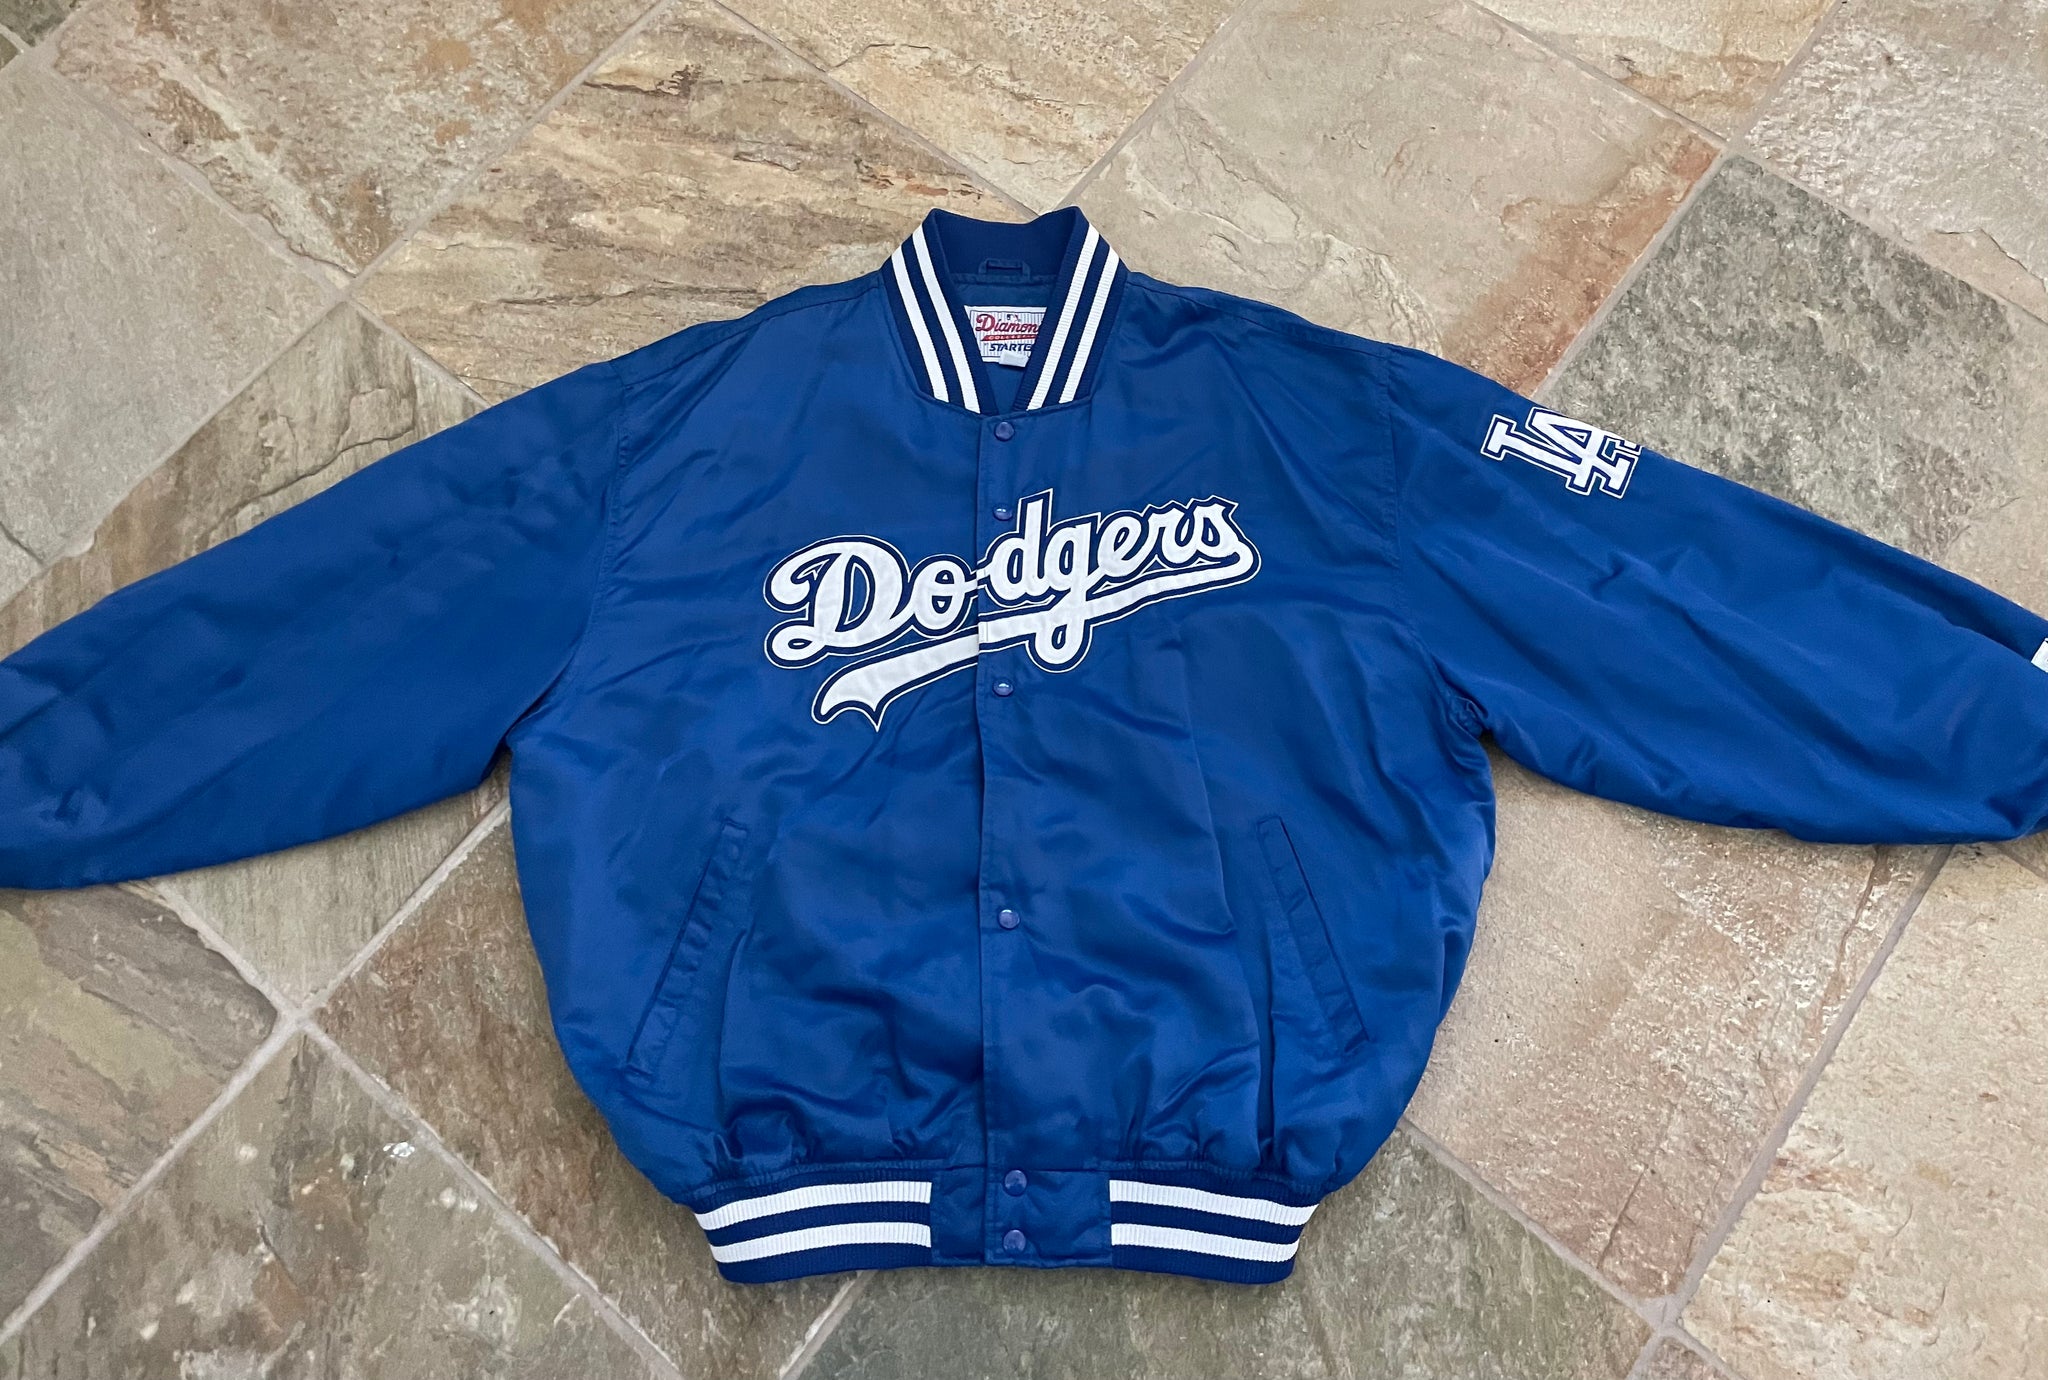 Dodgers Starter Baseball Jersey Vintage 90s Large